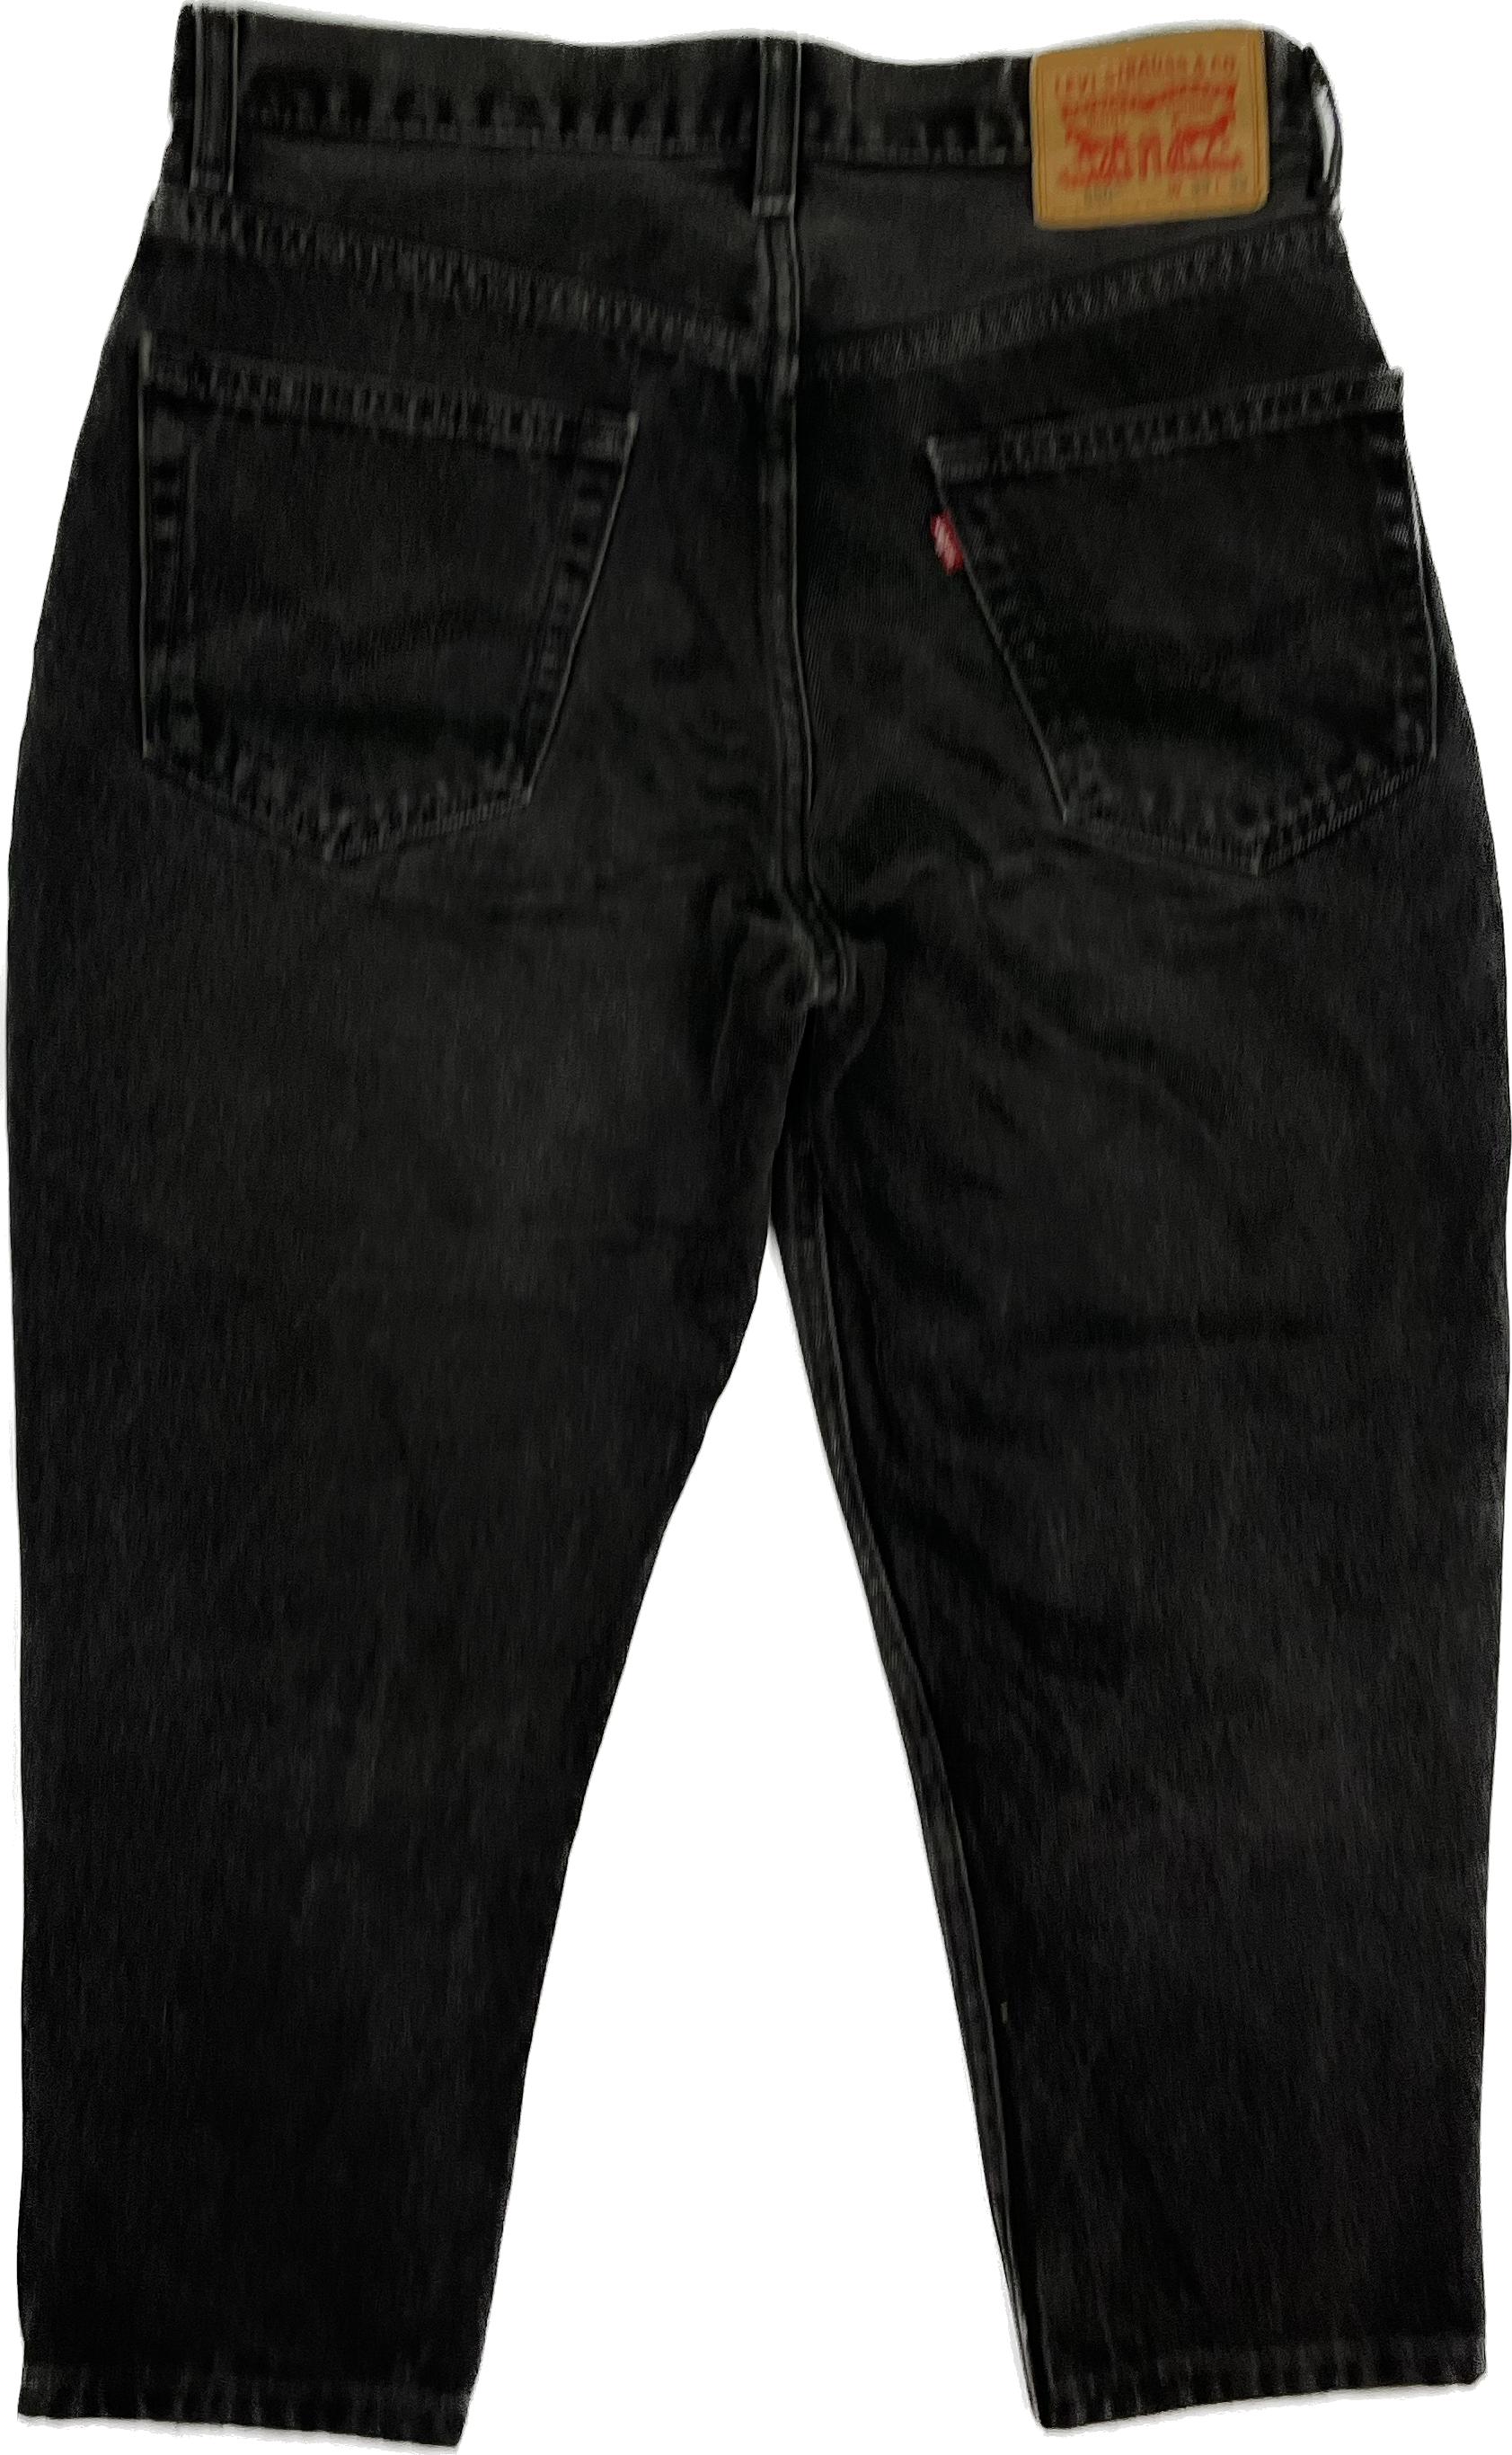 Levis 550 Jeans